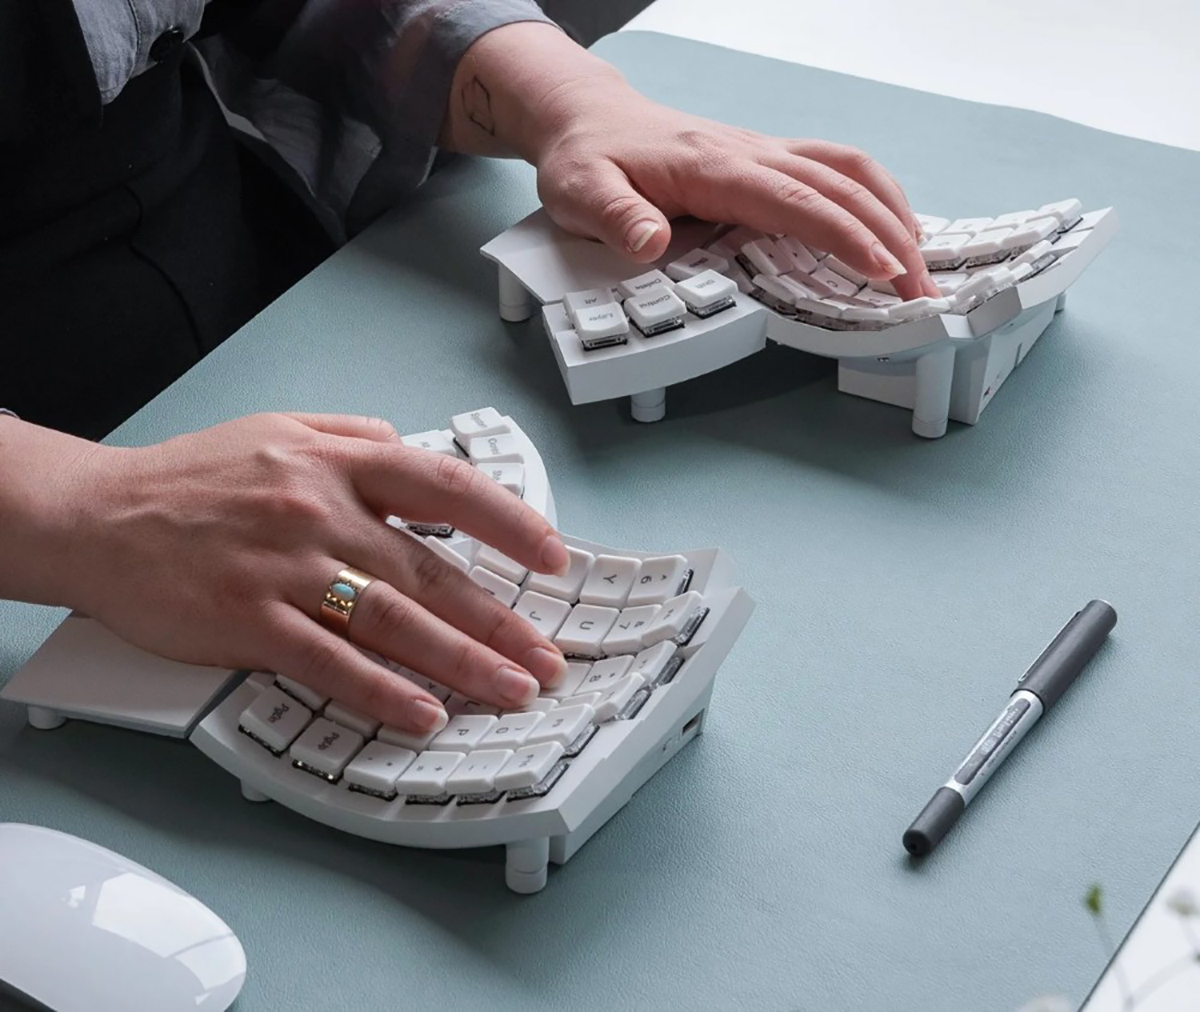 Glove80 : un clavier insolite et 100% ergonomique conçu comme 2 gants